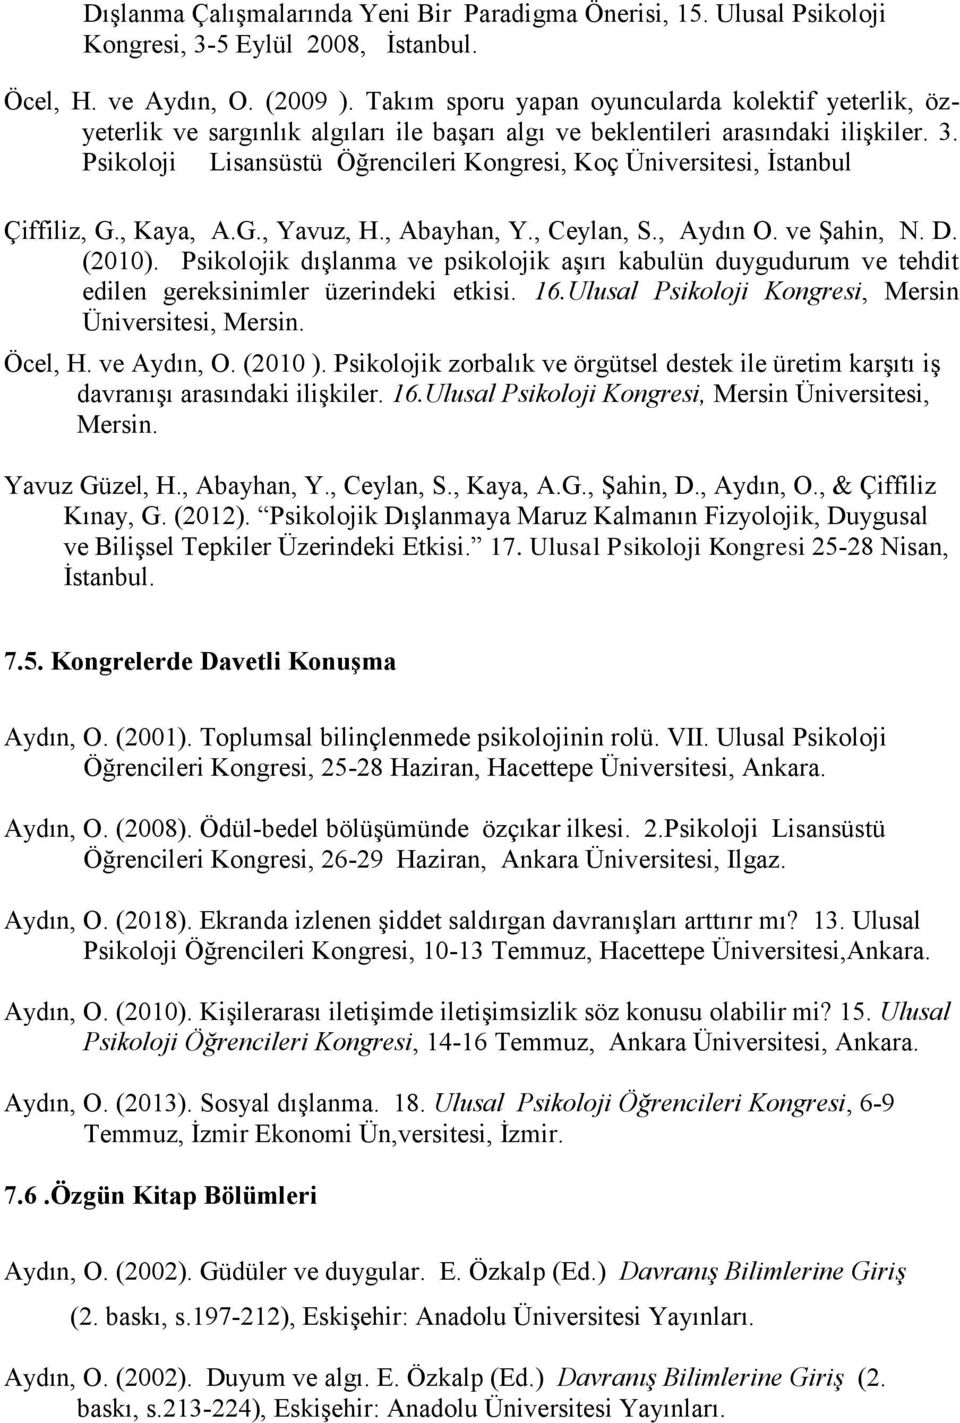 Psikoloji Lisansüstü Öğrencileri Kongresi, Koç Üniversitesi, İstanbul Çiffiliz, G., Kaya, A.G., Yavuz, H., Abayhan, Y., Ceylan, S., Aydın O. ve Şahin, N. D. (2010).